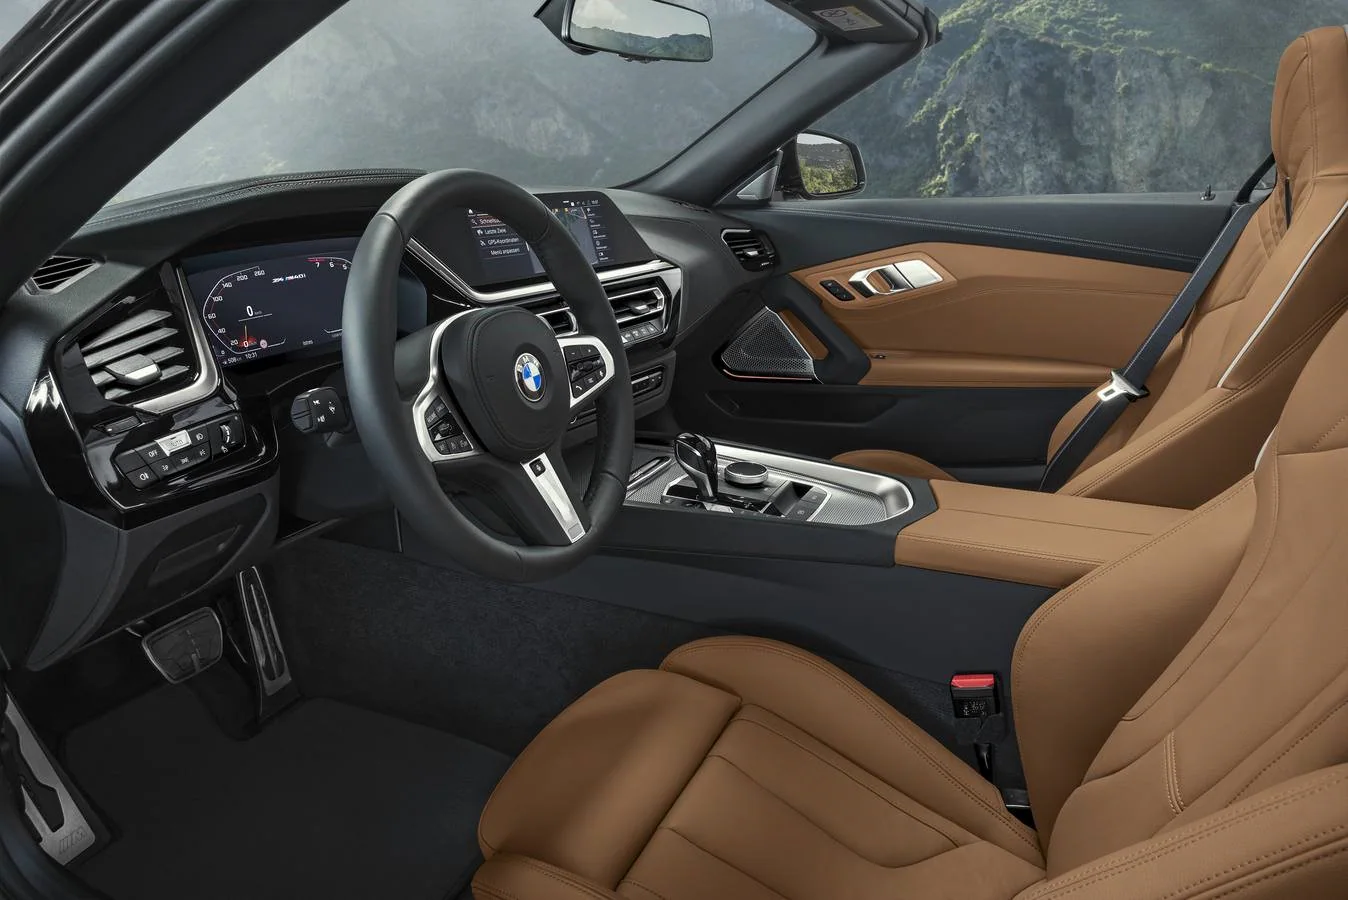 Los «roadsters» o biplazas descapotables de BMW han destacado como iconos del puro placer de conducción. Ahora, el nuevo Z4 se une a este salón de la fama de la firma bávara. Un cabrio con capota clásica de lona que cuesta desde 48.900 euros.